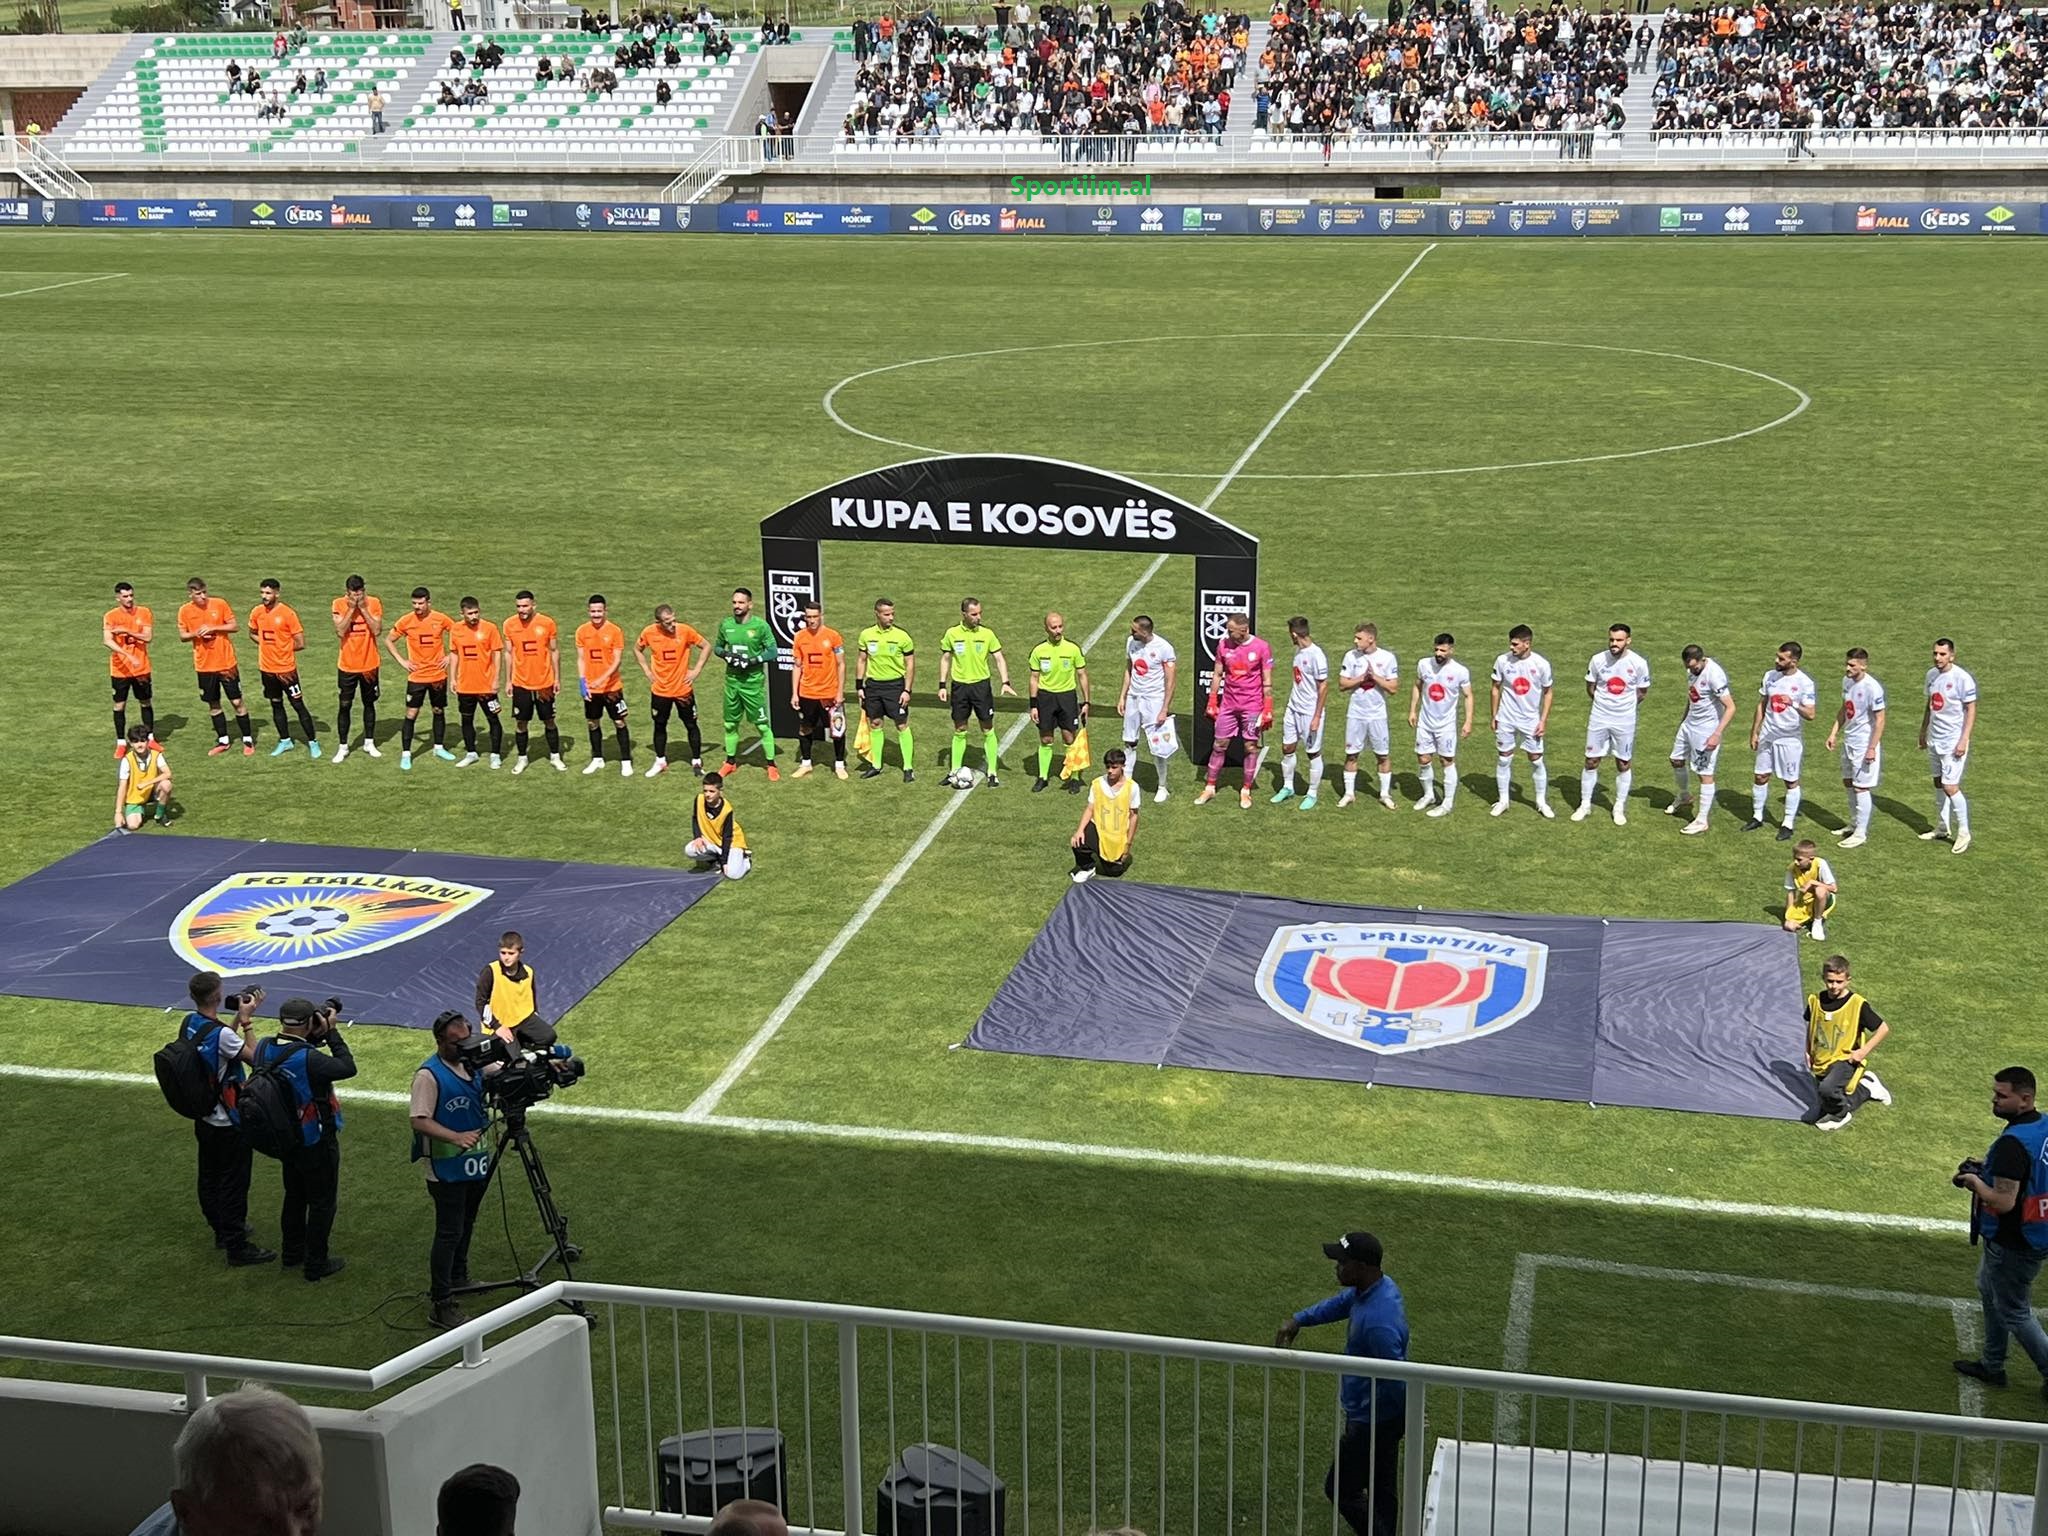 Nis finalja e Kupës, Prishtina- Ballkani në Drenas